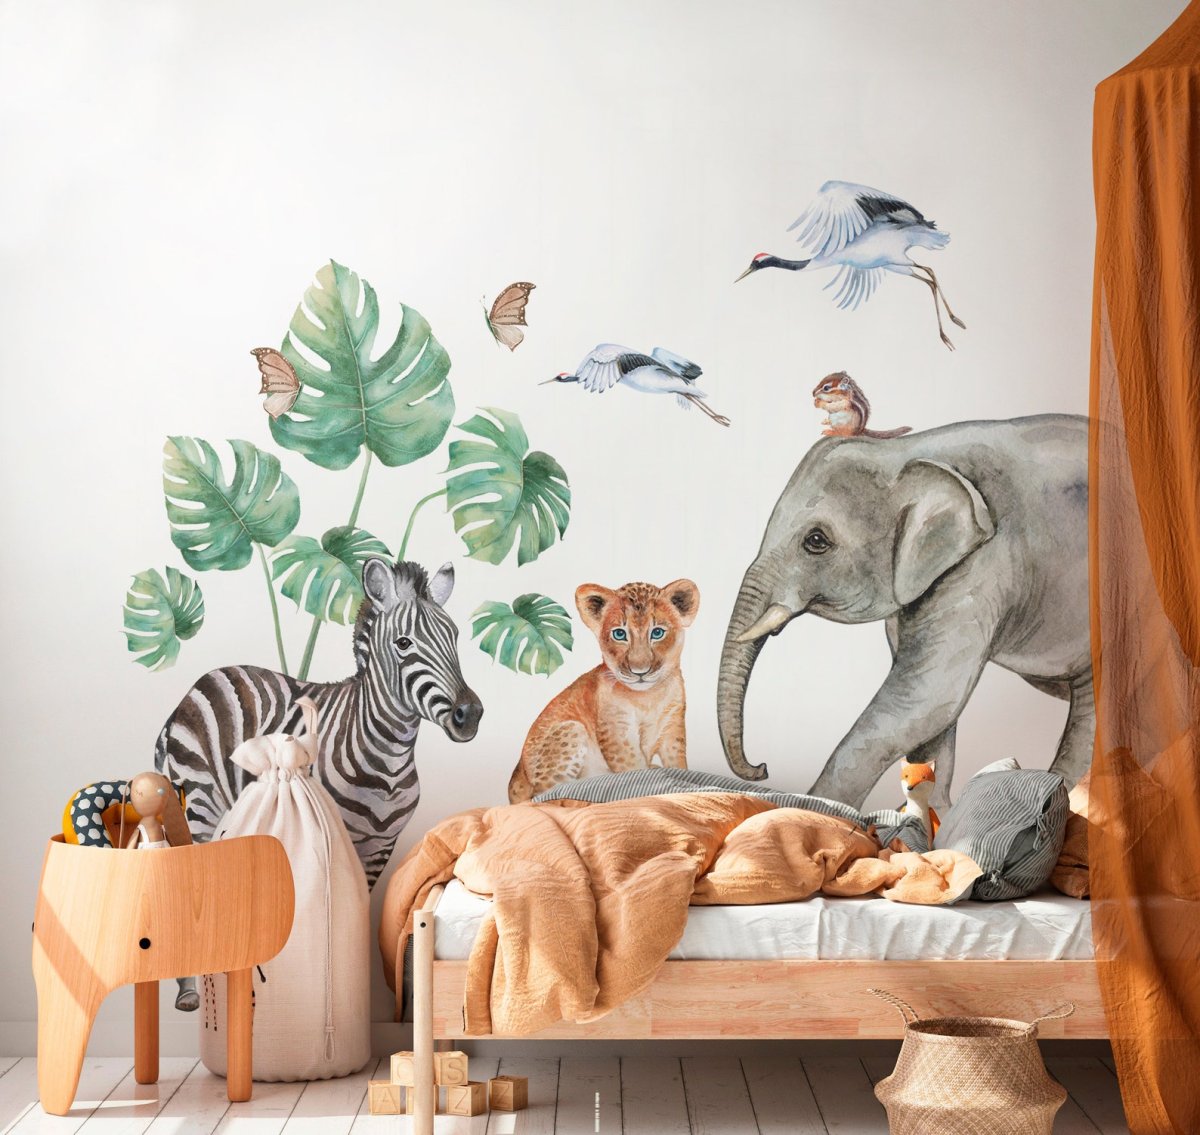 Детская комната в стиле сафари